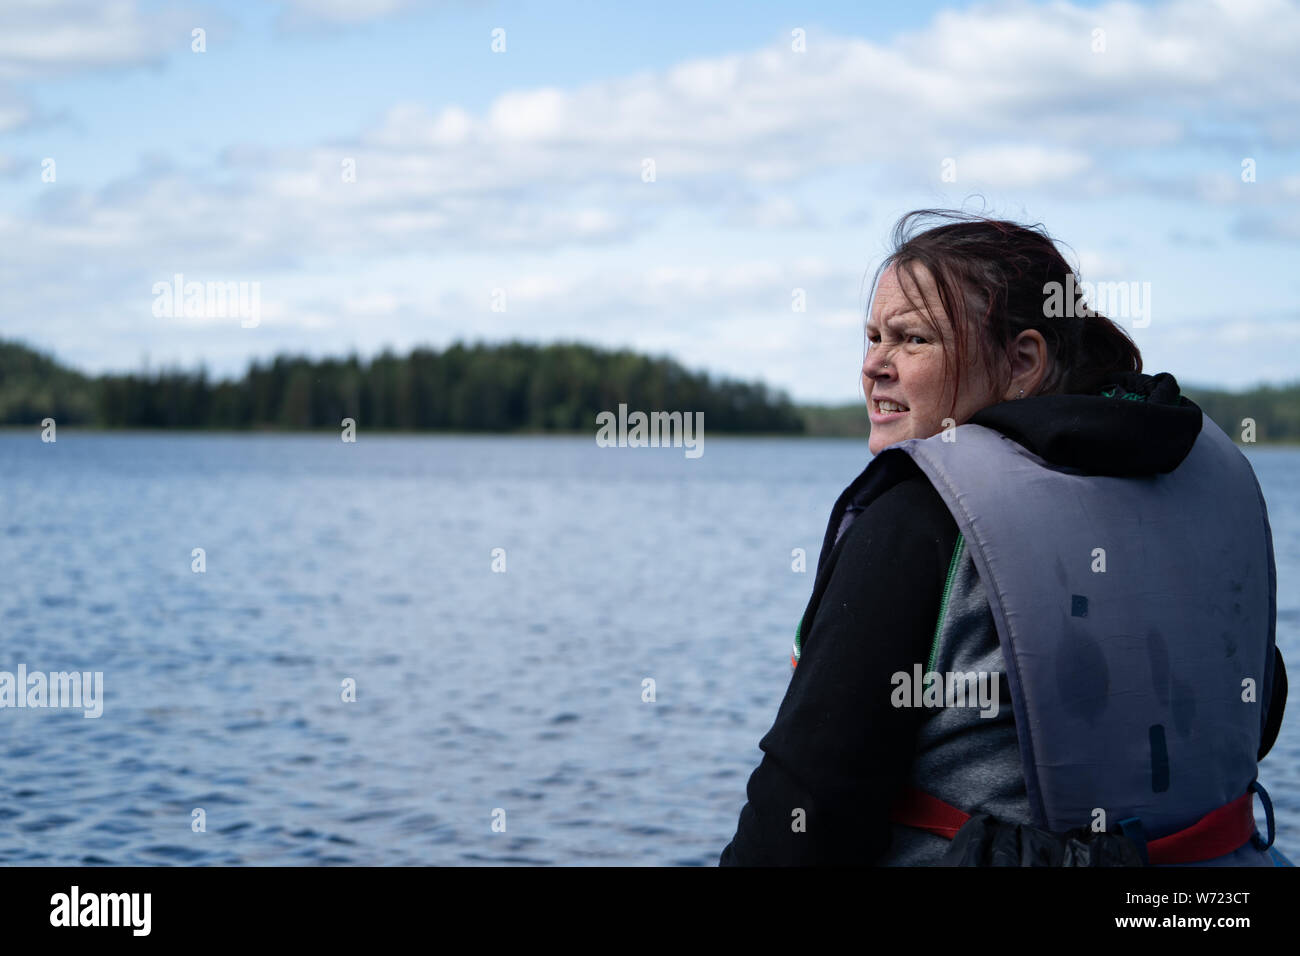 Donna che indossa una spinta di galleggiamento aiuti / giubbotto di salvataggio su un lago (barca non visibile) Foto Stock